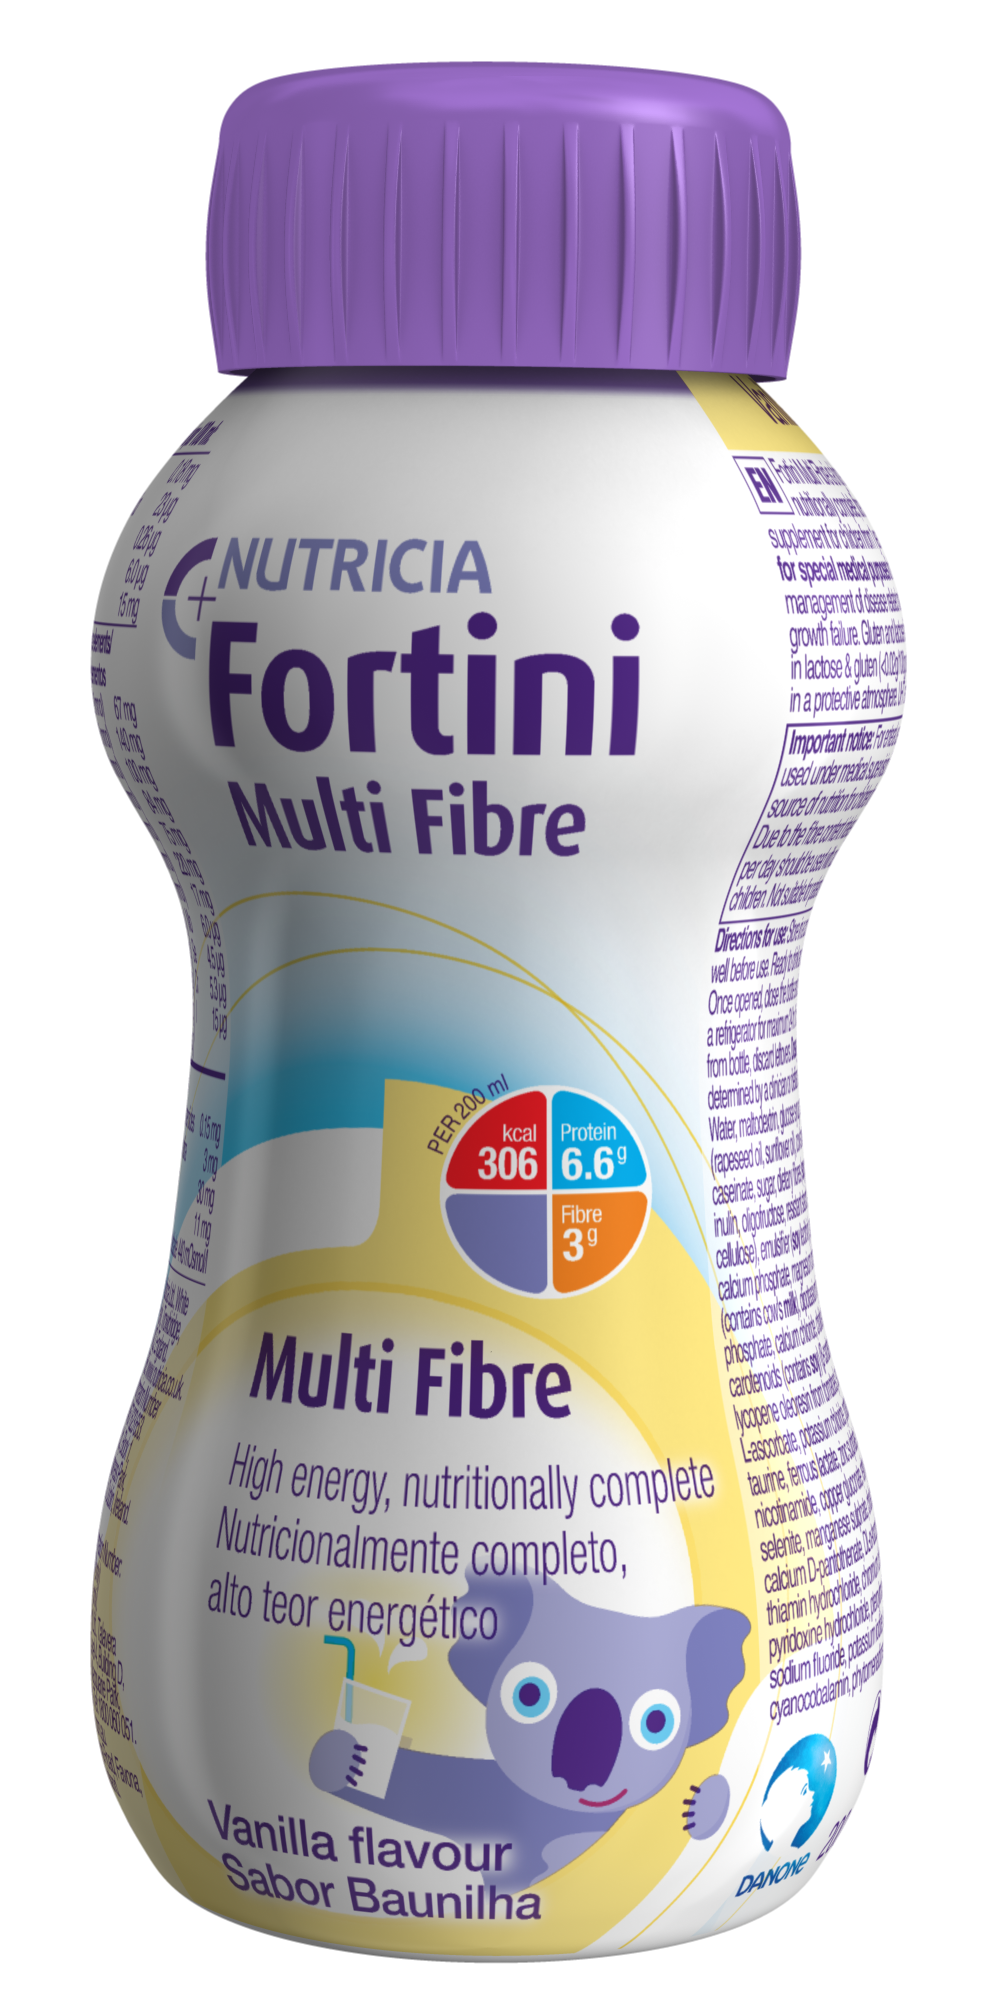 Fortini Multi Fibre packshot